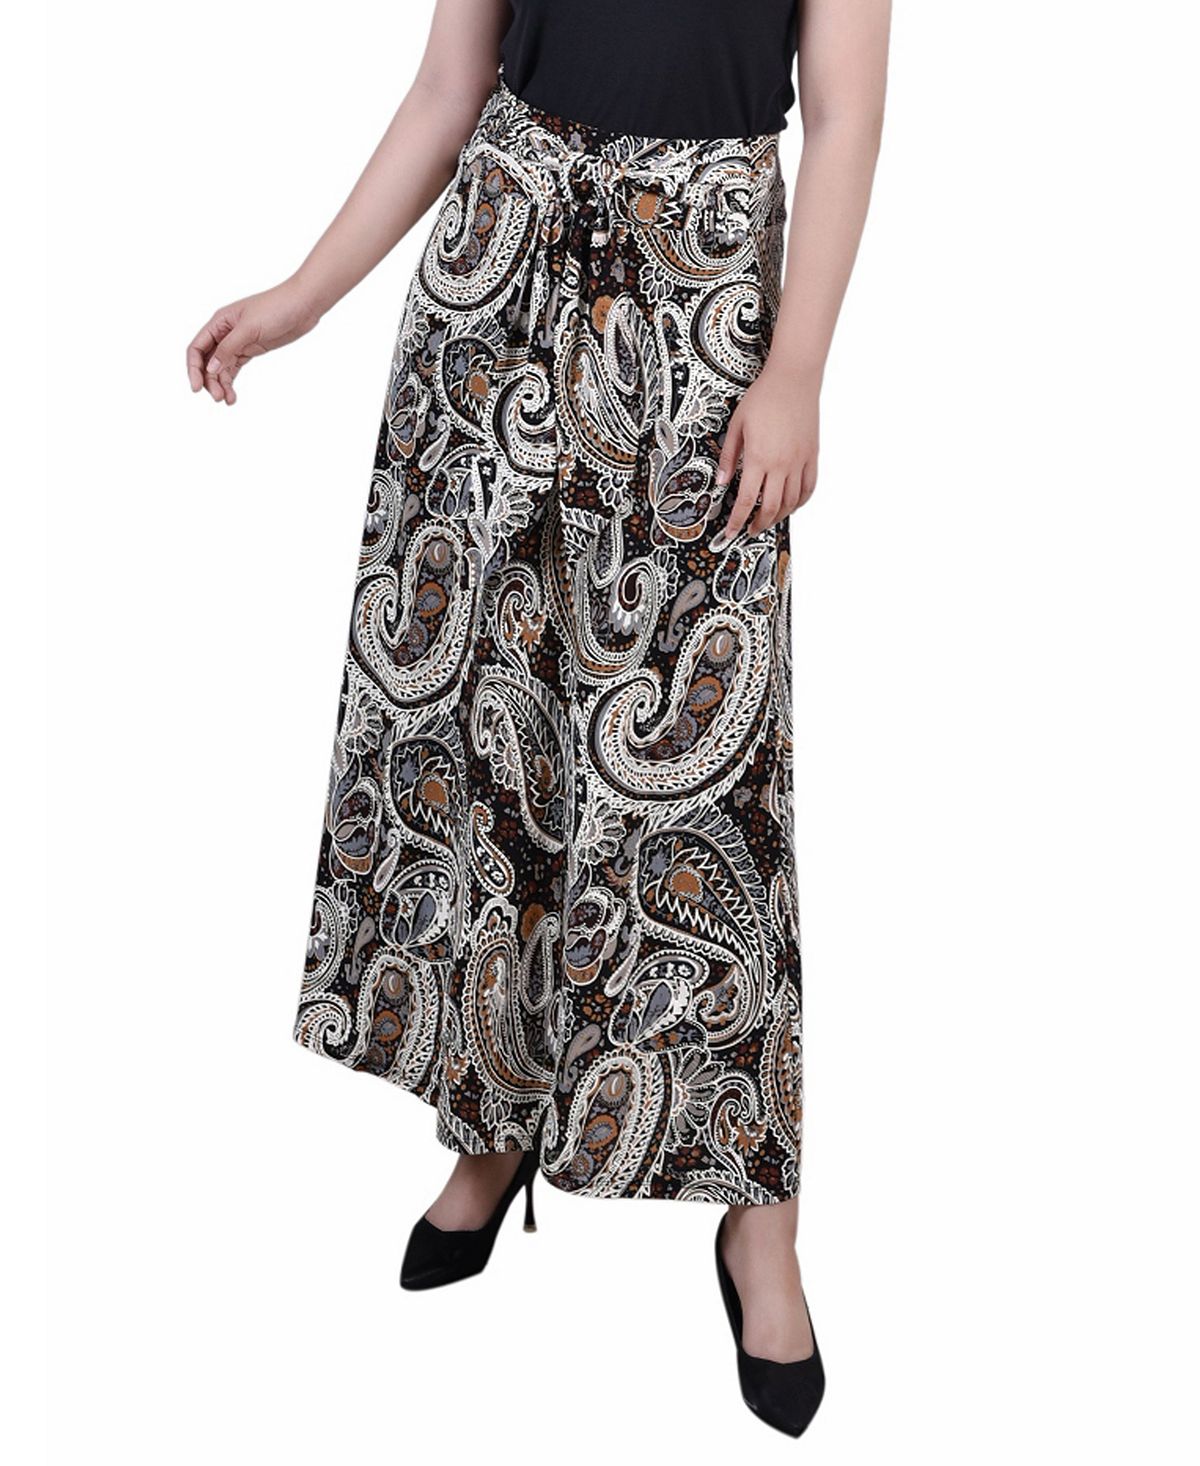 юбка freya collection фердинанда Миниатюрная длинная юбка с поясом на талии NY Collection, мульти